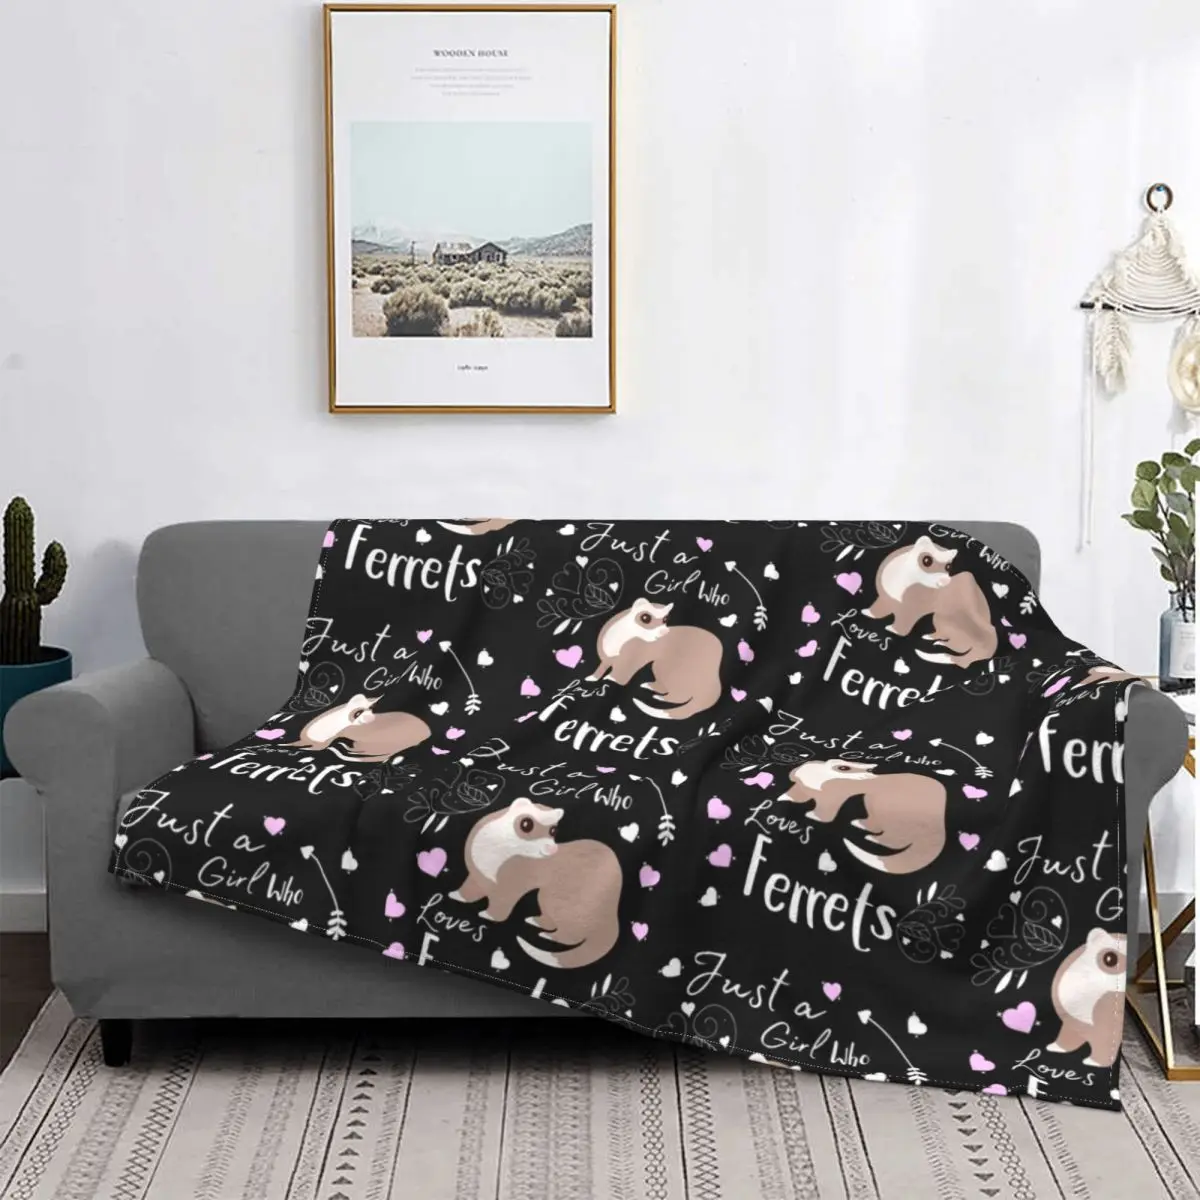 

Just A Girl Who Loves Ferrets Blanket Velvet Cute Ferret Lover Gift Multi-function Soft Throw Blankets for Sofa Office Bedspread